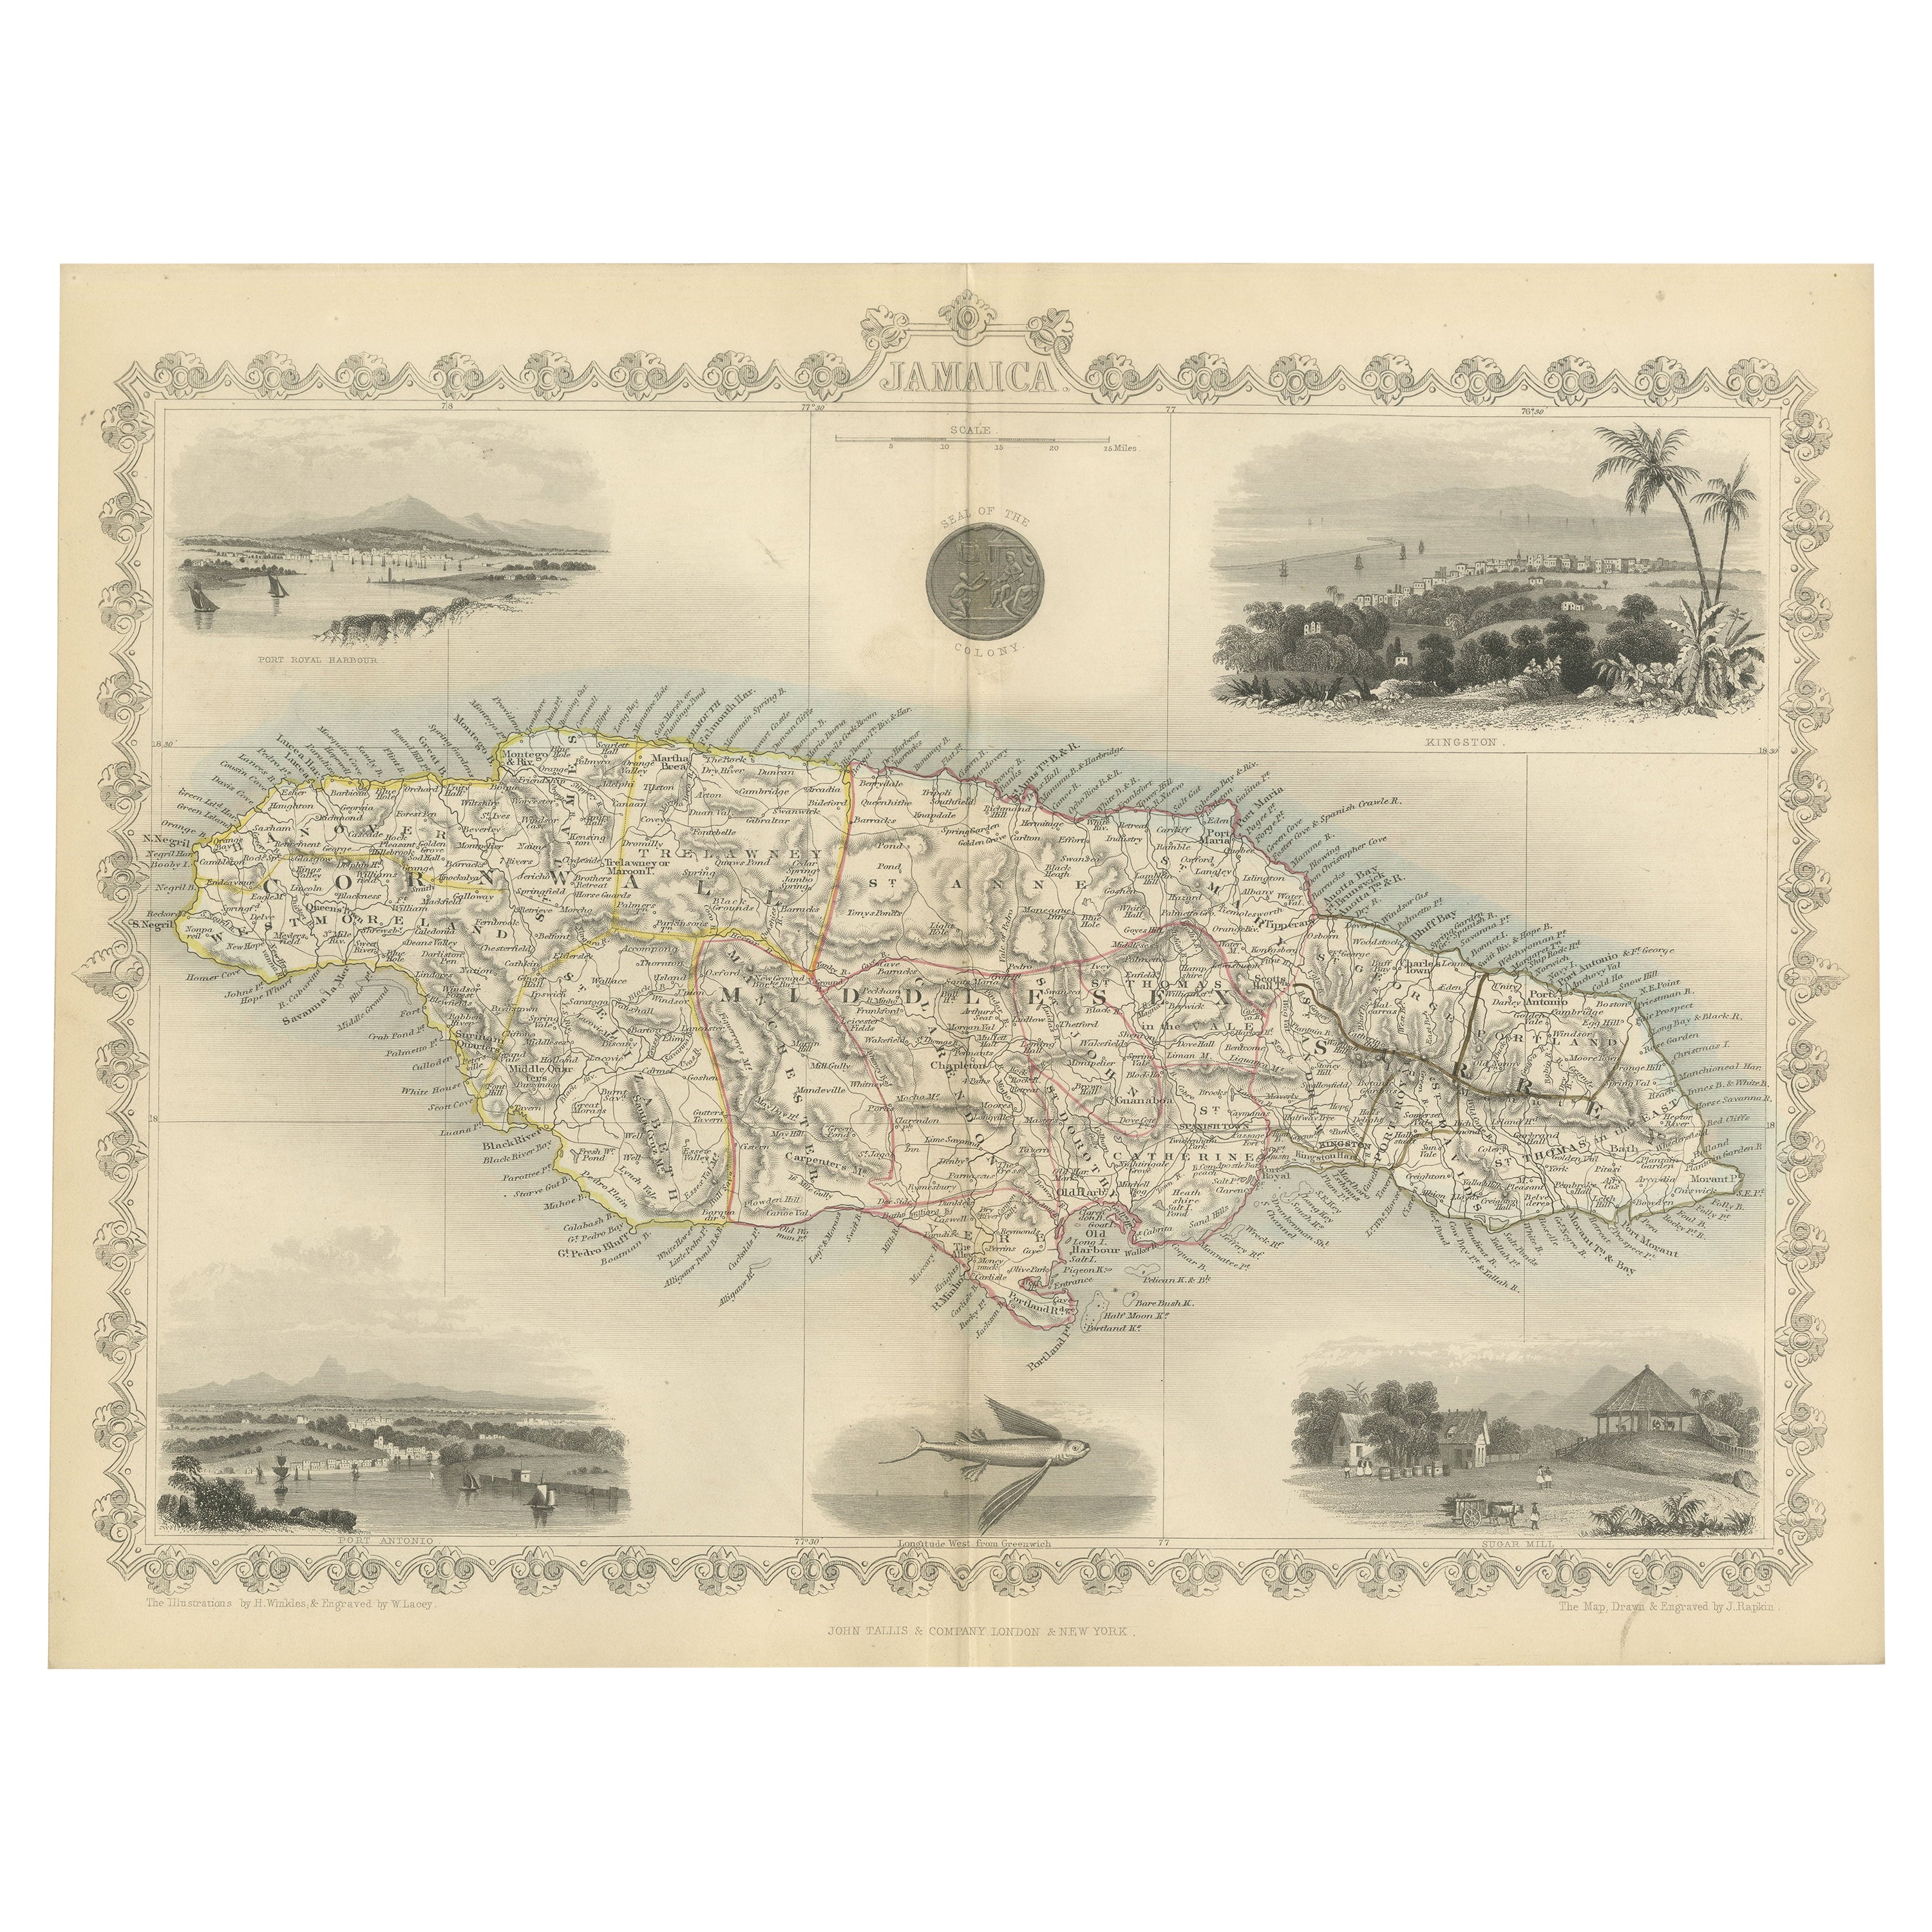 Ornamente und historische Tallis-Karte von Jamaika mit dekorativen Vignetten, 1851